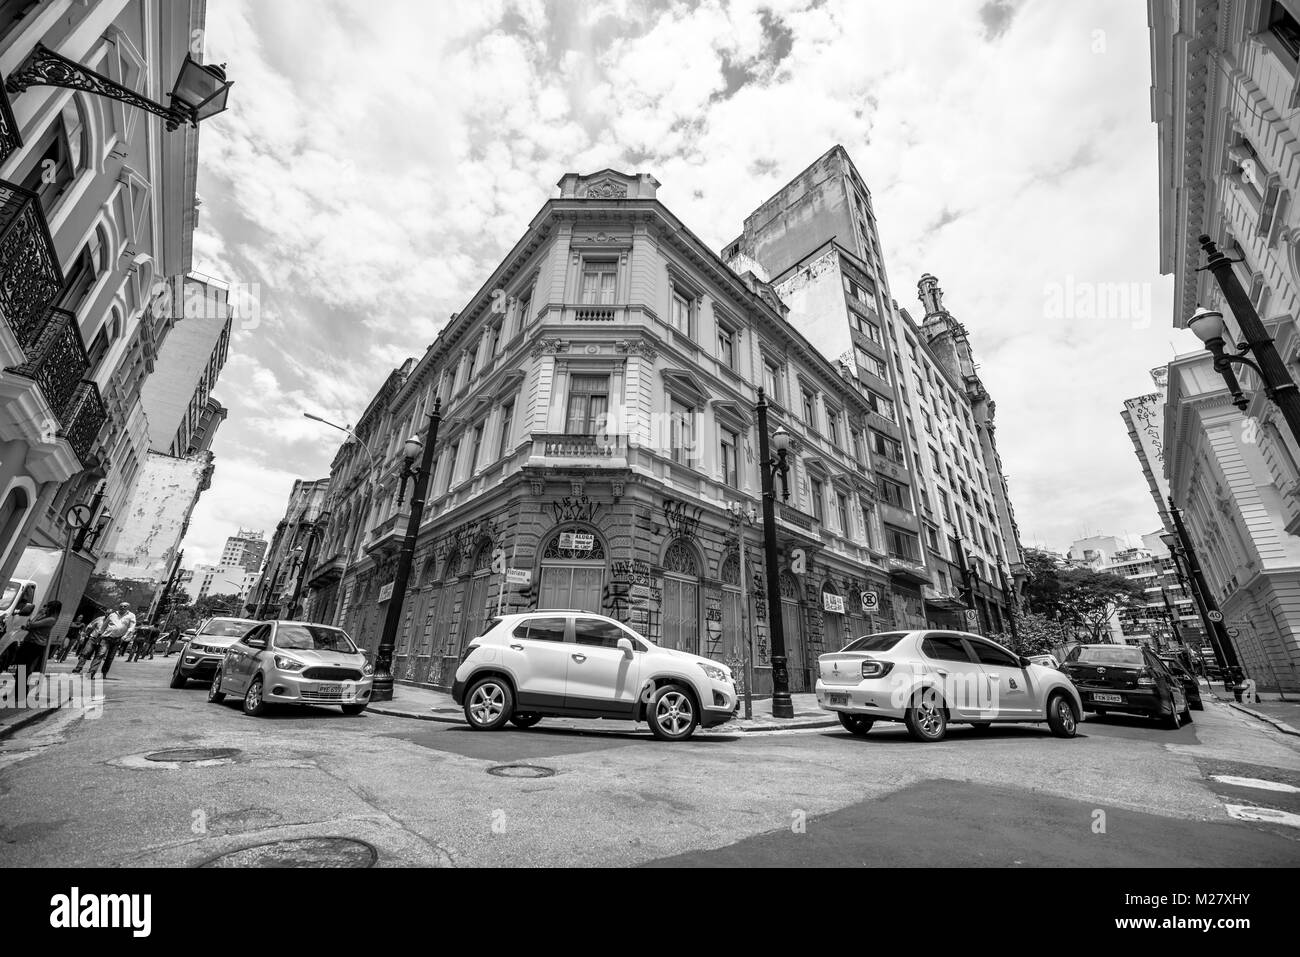 SAO PAULO, BRÉSIL - le 02 février : Noir et blanc photo de l'ancien immeuble d'angle, situé dans la zone centrale de Sao Paulo, Brésil. Banque D'Images